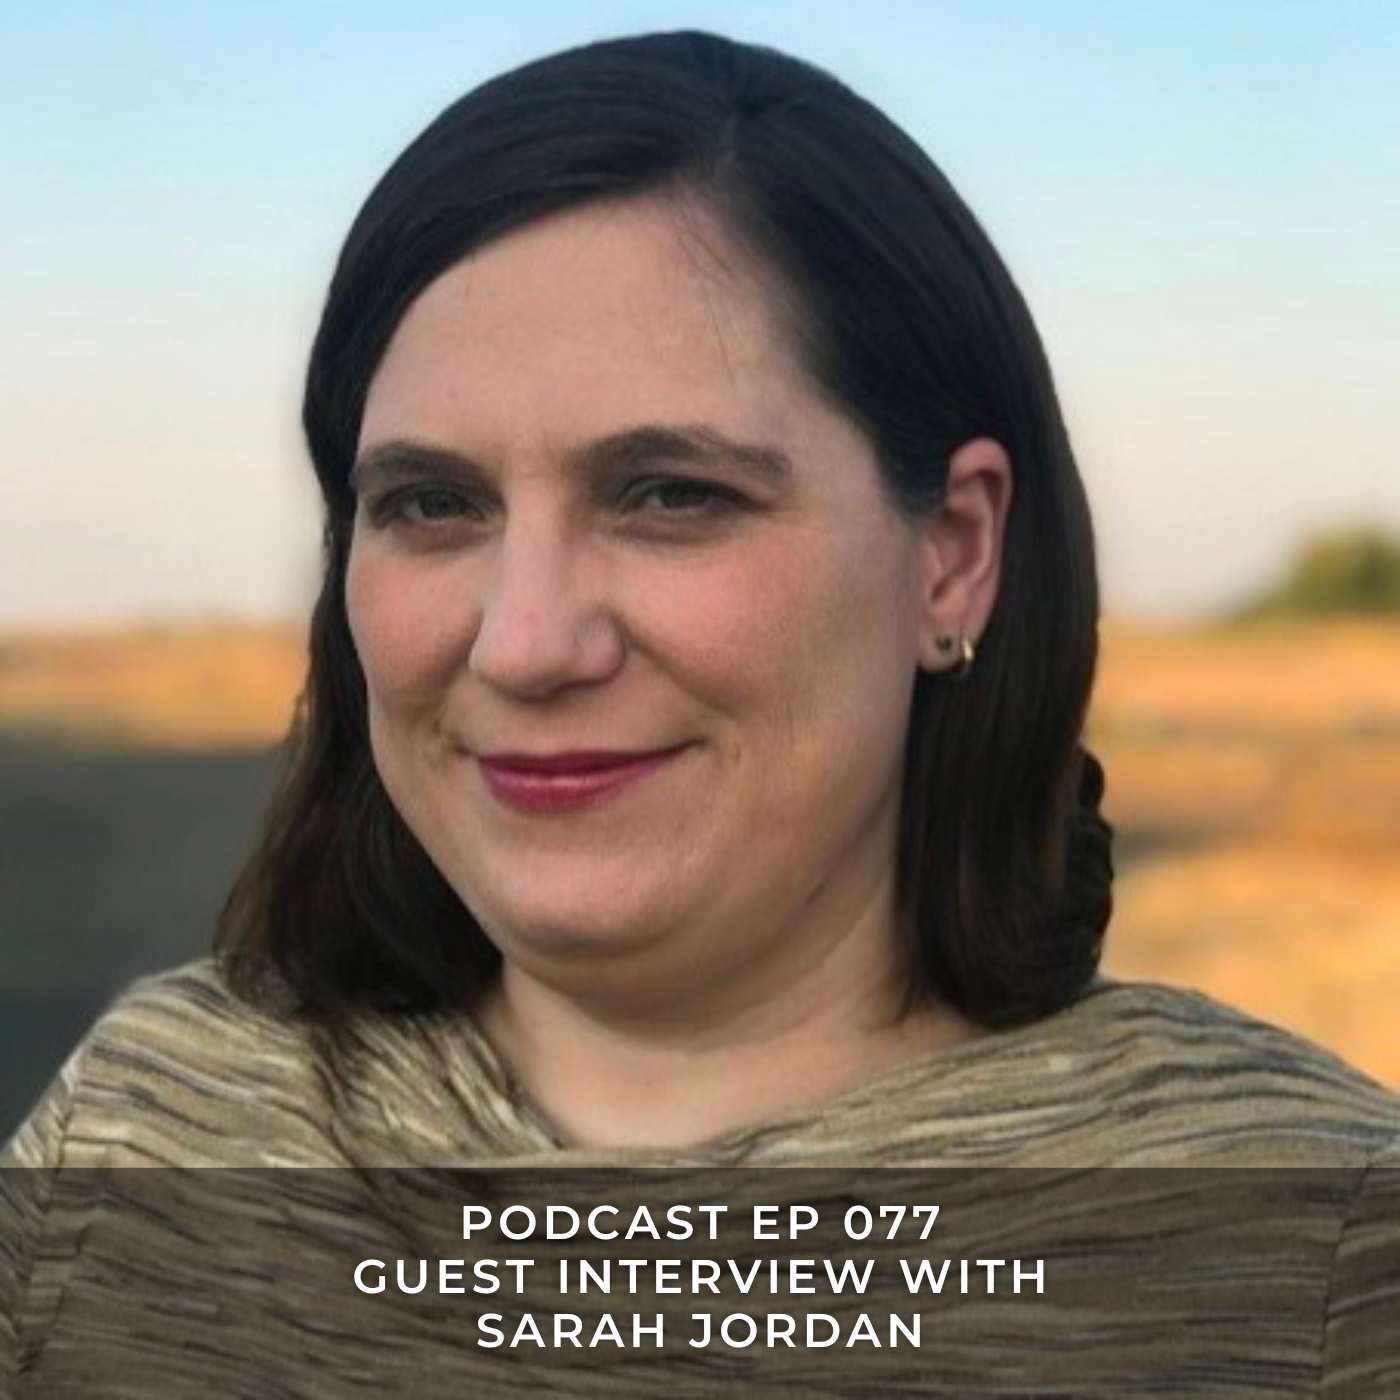 Guest Interview with Sarah Jordan